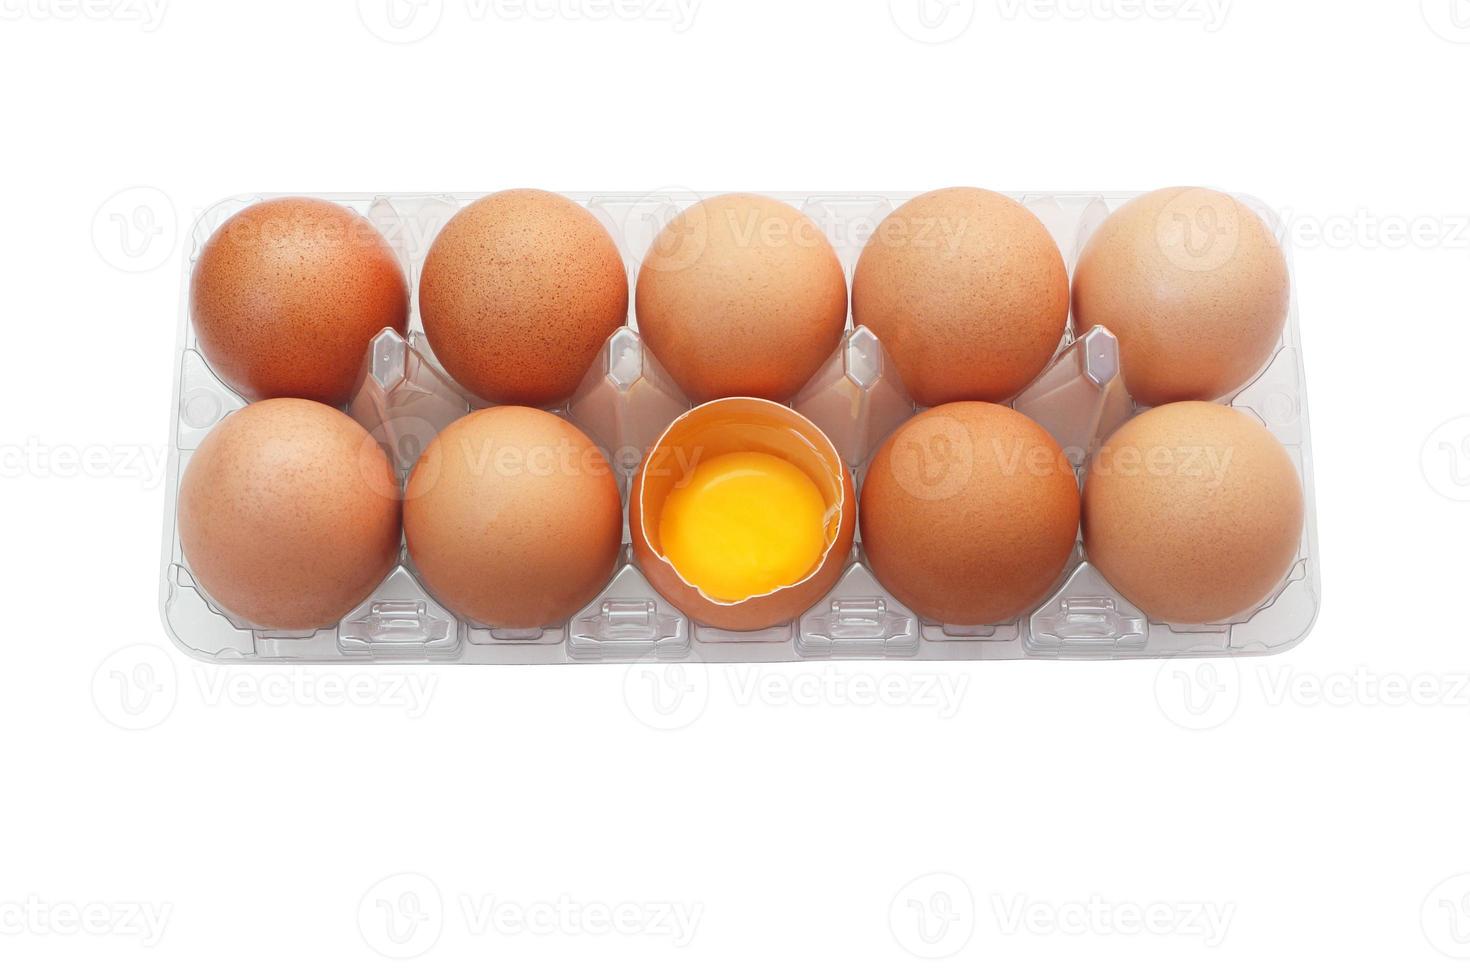 oeufs de poulet dans un plateau en plastique isolé sur fond blanc. un œuf a été ouvert pour révéler le jaune frais à l'intérieur. photo